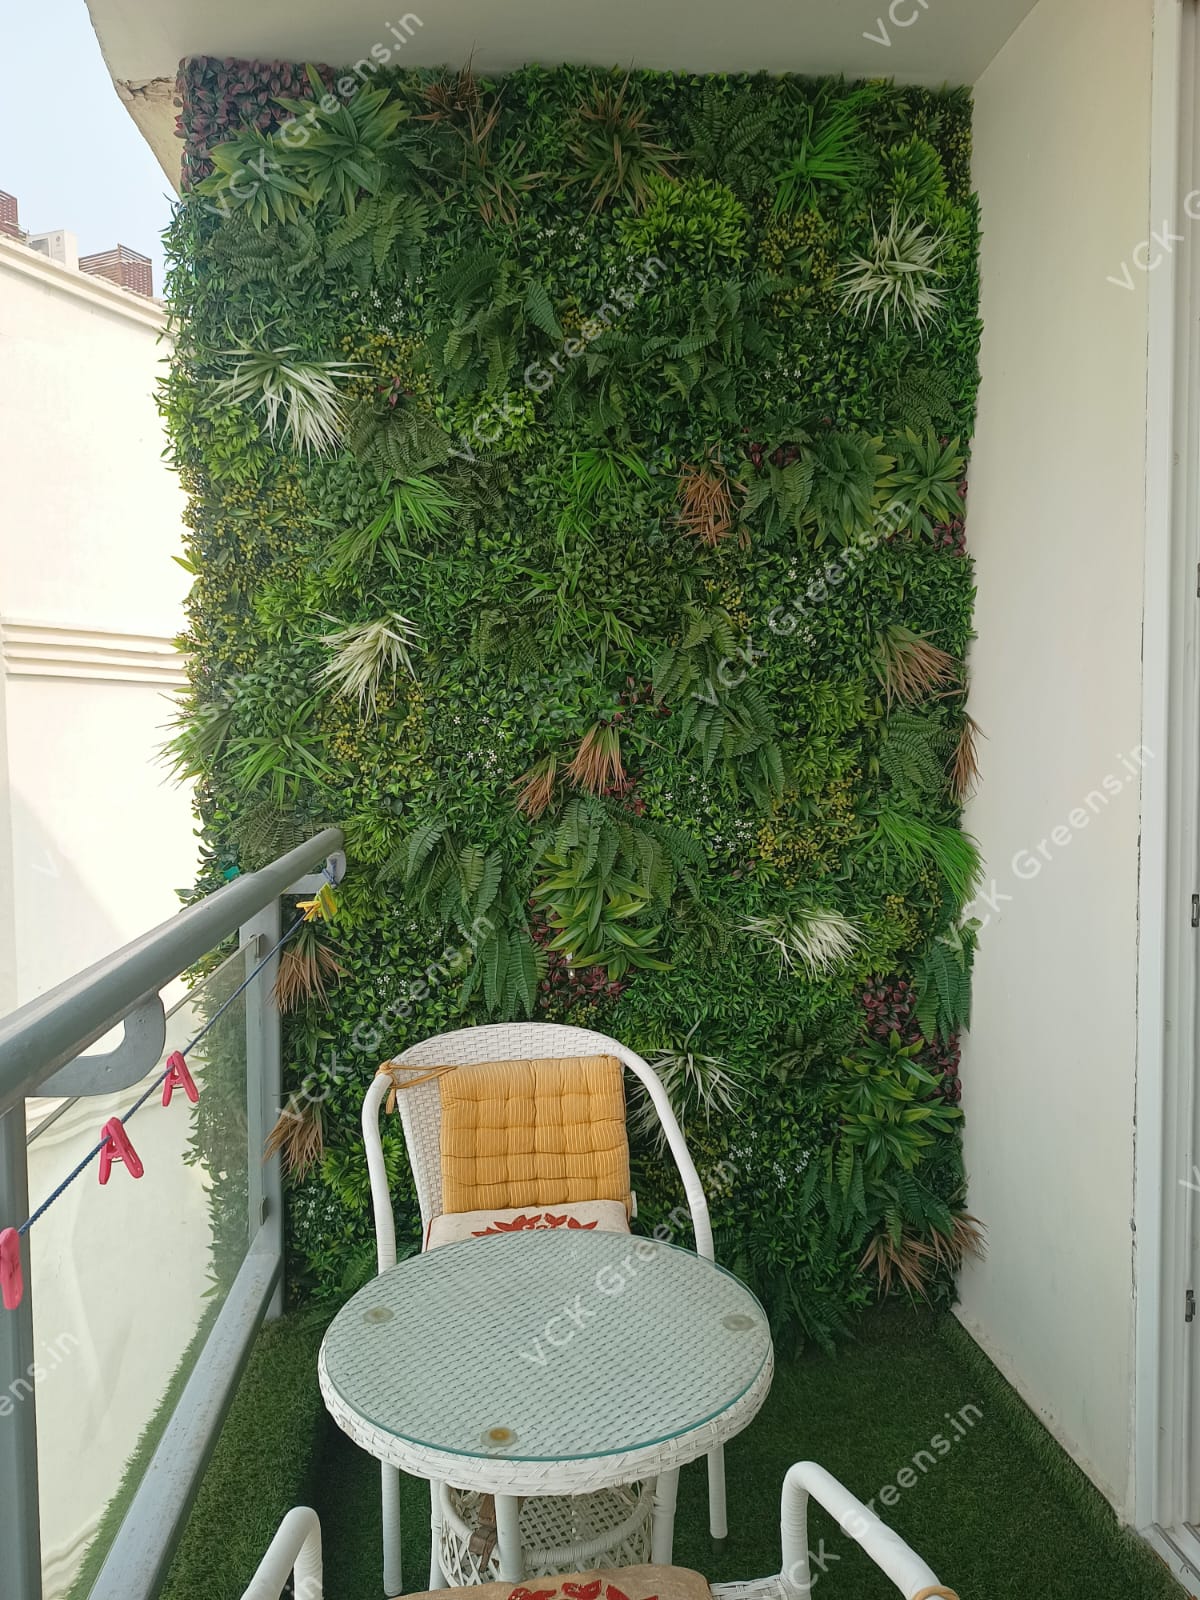 Artificial Vertical Garden Wall Panels – VCK Greens